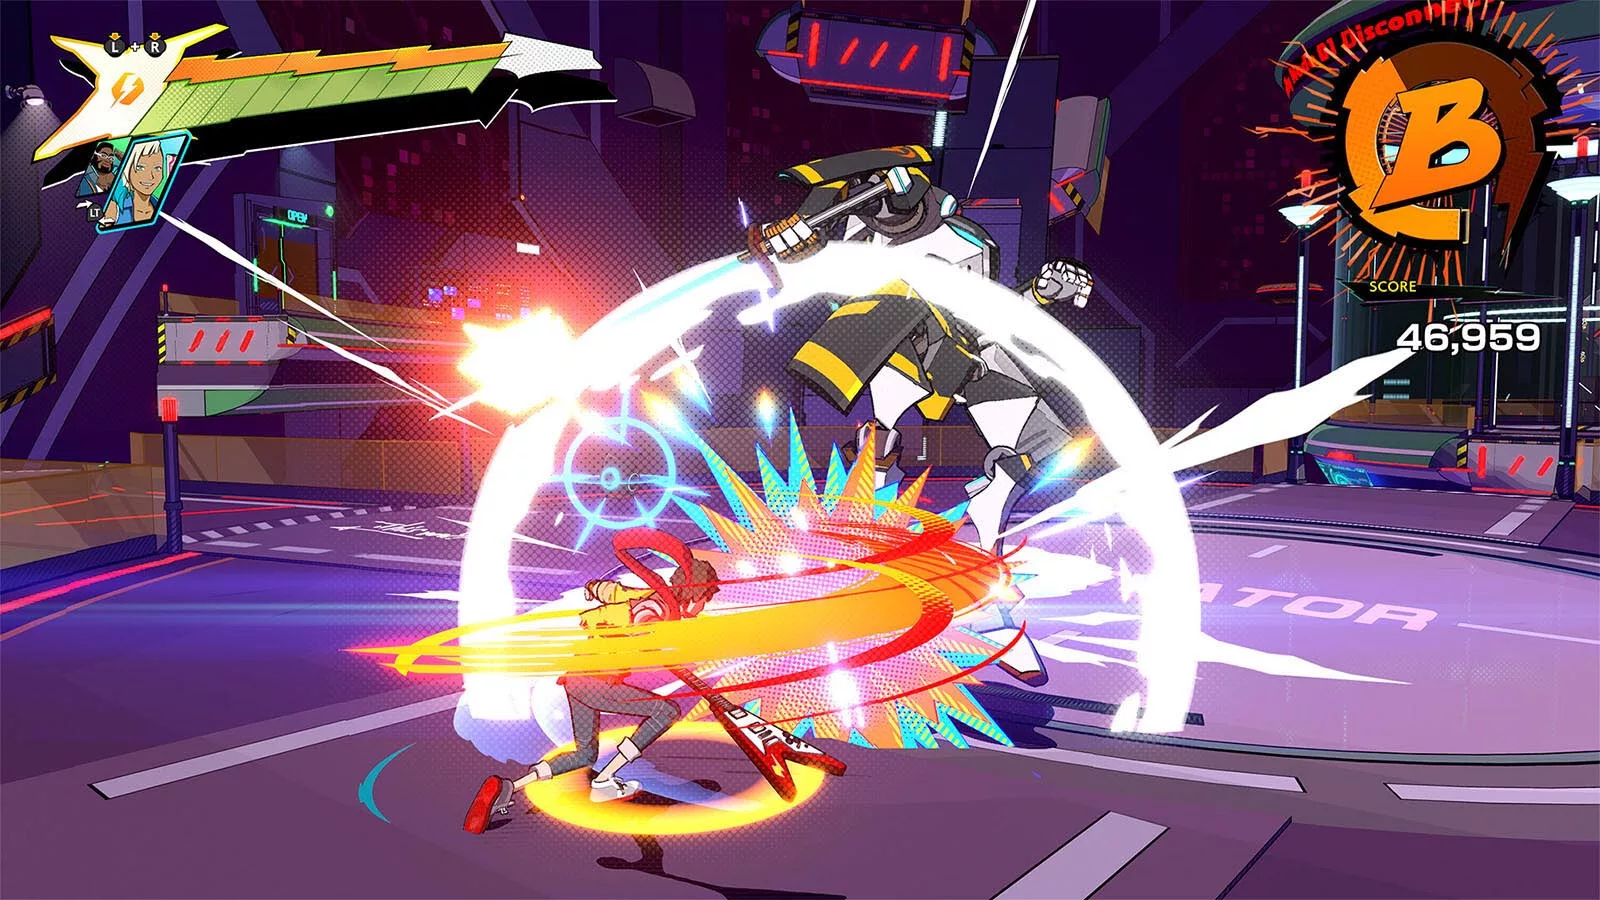 Скриншот из видеоигры, на котором персонаж в ярких цветах бьет гигантского робота электрогитарой